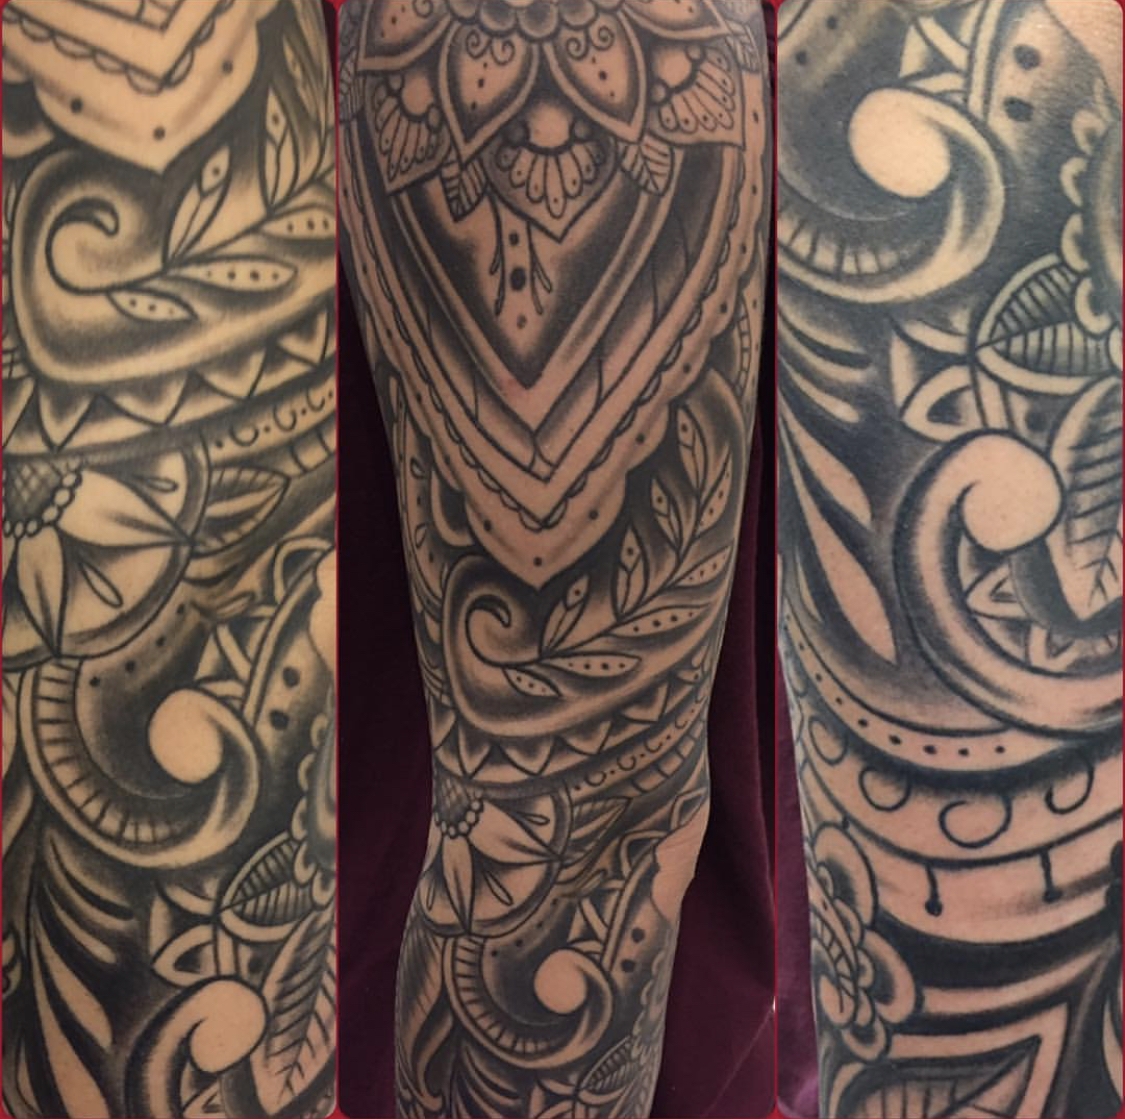 Katy's Best Tattoo Studio  Artistic Impressions Tattoo